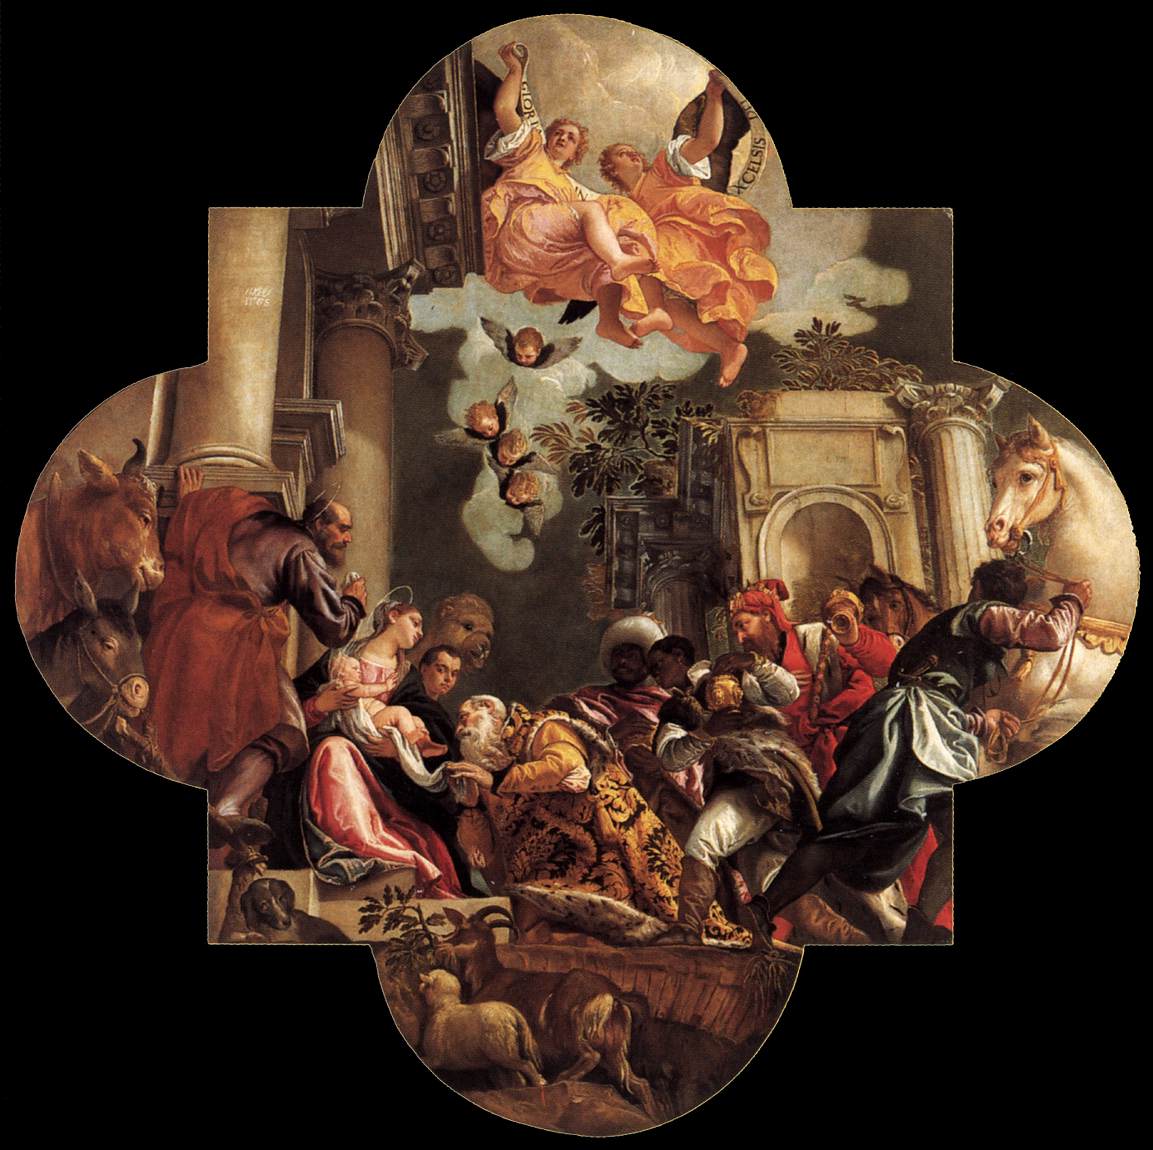 Paolo+Veronese-1528-1588 (114).jpg